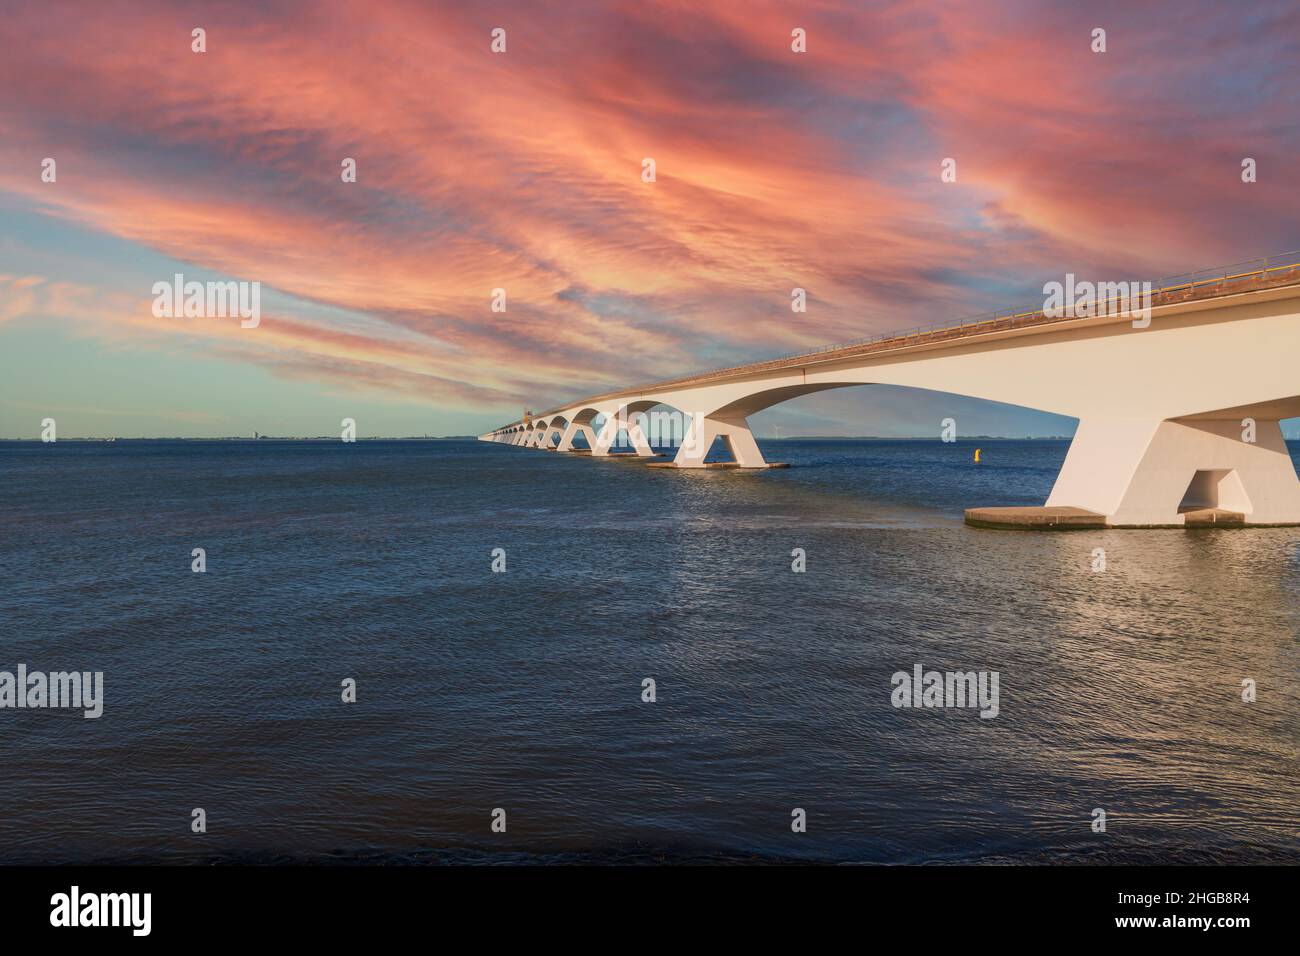 Zeeland Bridge - lungo ponte bianco sul fiume, bellissimo cielo blu con nuvole dinamiche. Lungo tempo, acque calme dell'Oosterschelde. Tramonto. Foto Stock